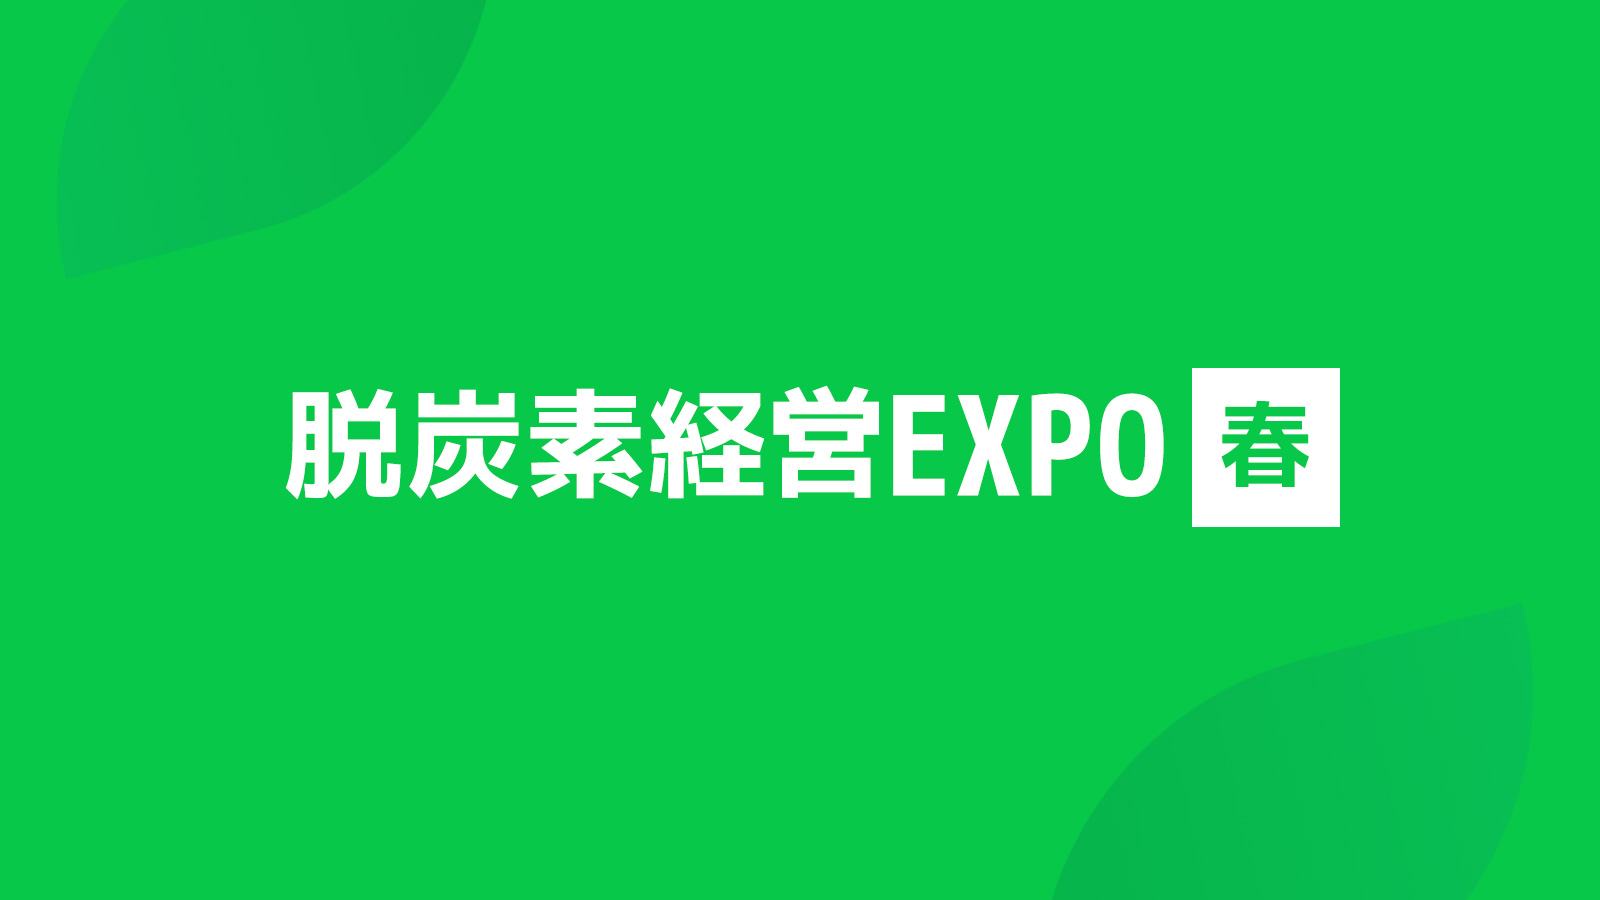 GXニュース 2月28日(水)-3月1日(金)「脱炭素経営EXPO【春】東京ビッグサイト」に出展致します